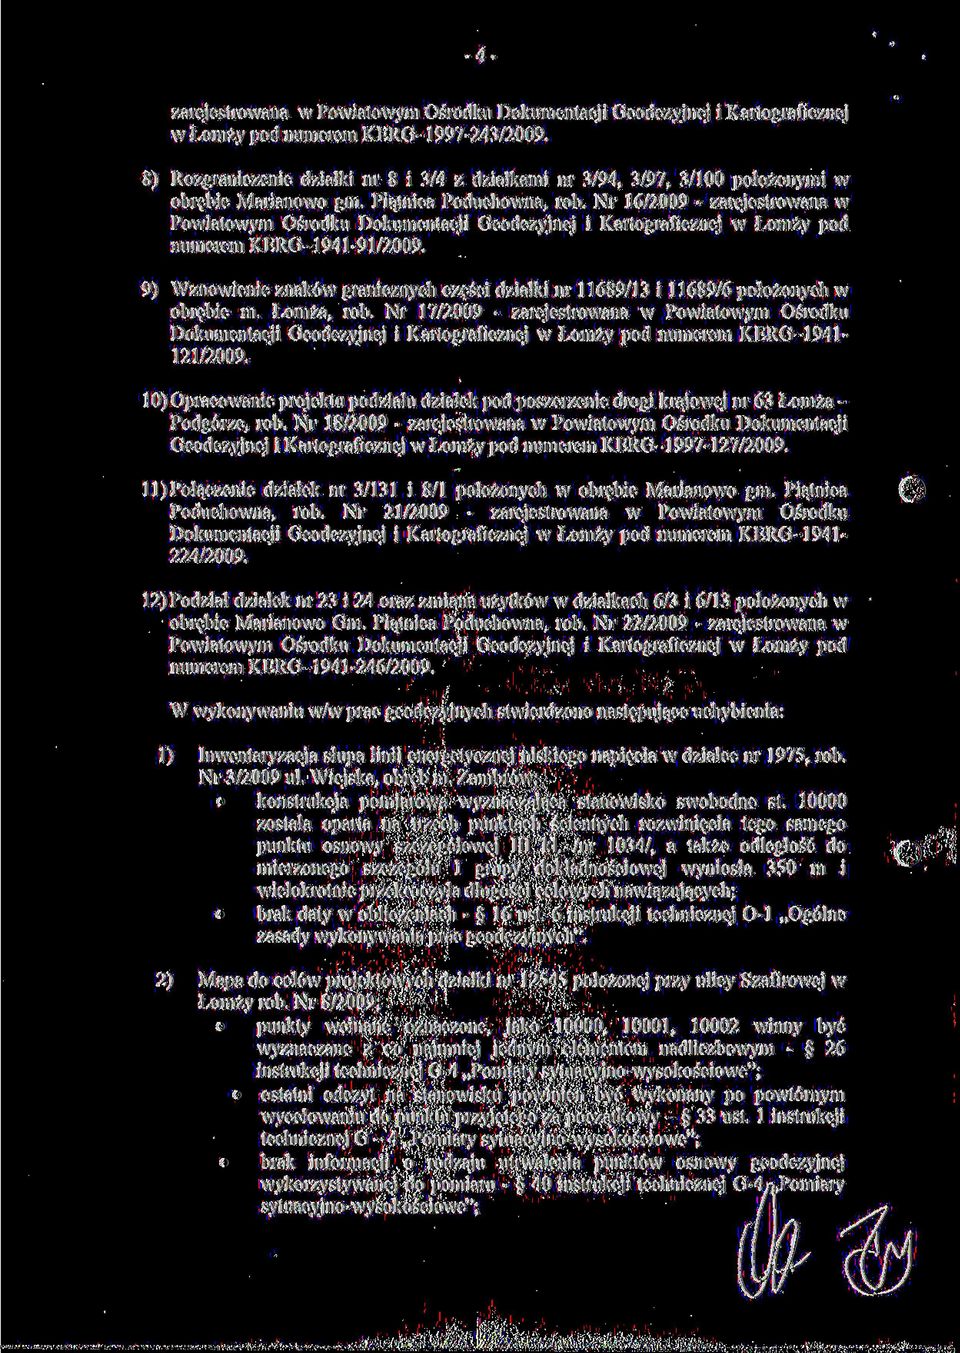 Nr 16/2009 - zarejestrowana w Powiatowym Ośrodku Dokumentacji Geodezyjnej i Kartograficznej w Łomży pod numerem KERG-1941-91/2009.